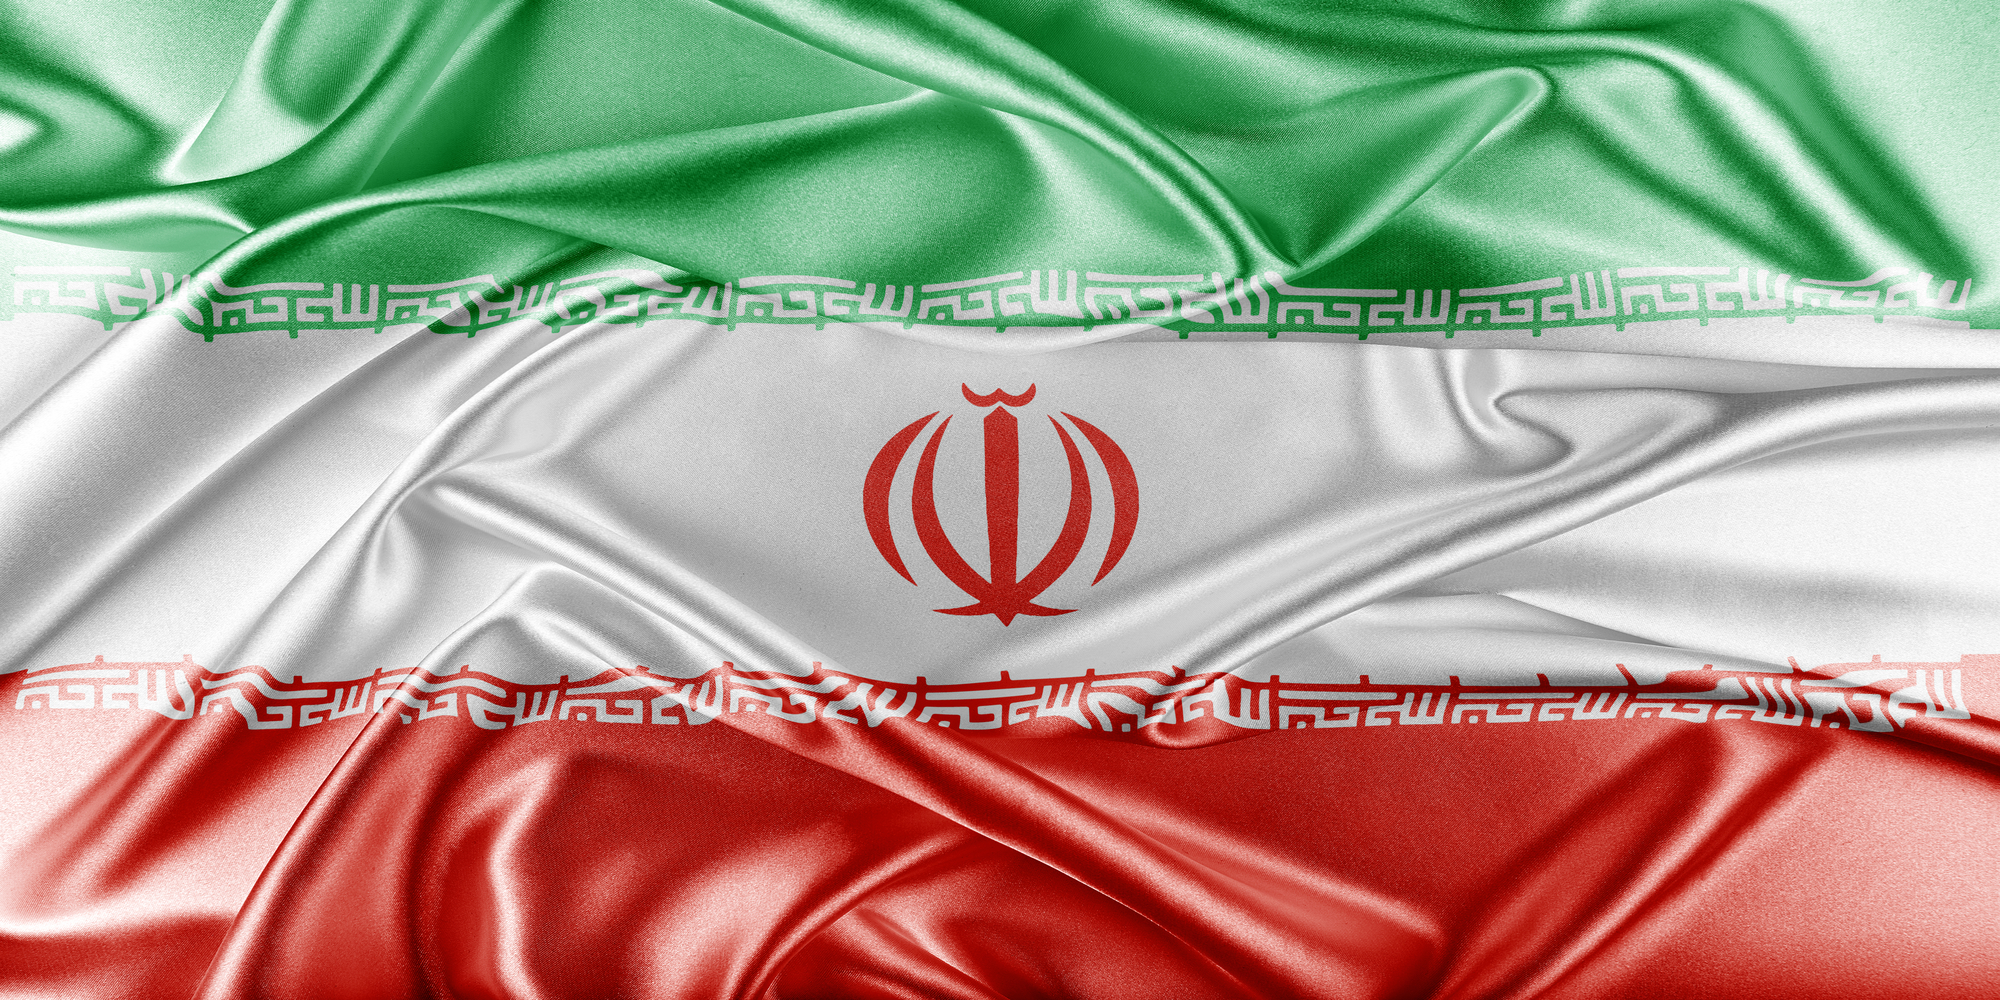 Moszkva: Az amerikai szankciók nem állítják le az iráni nukleáris objektumok átalakítását